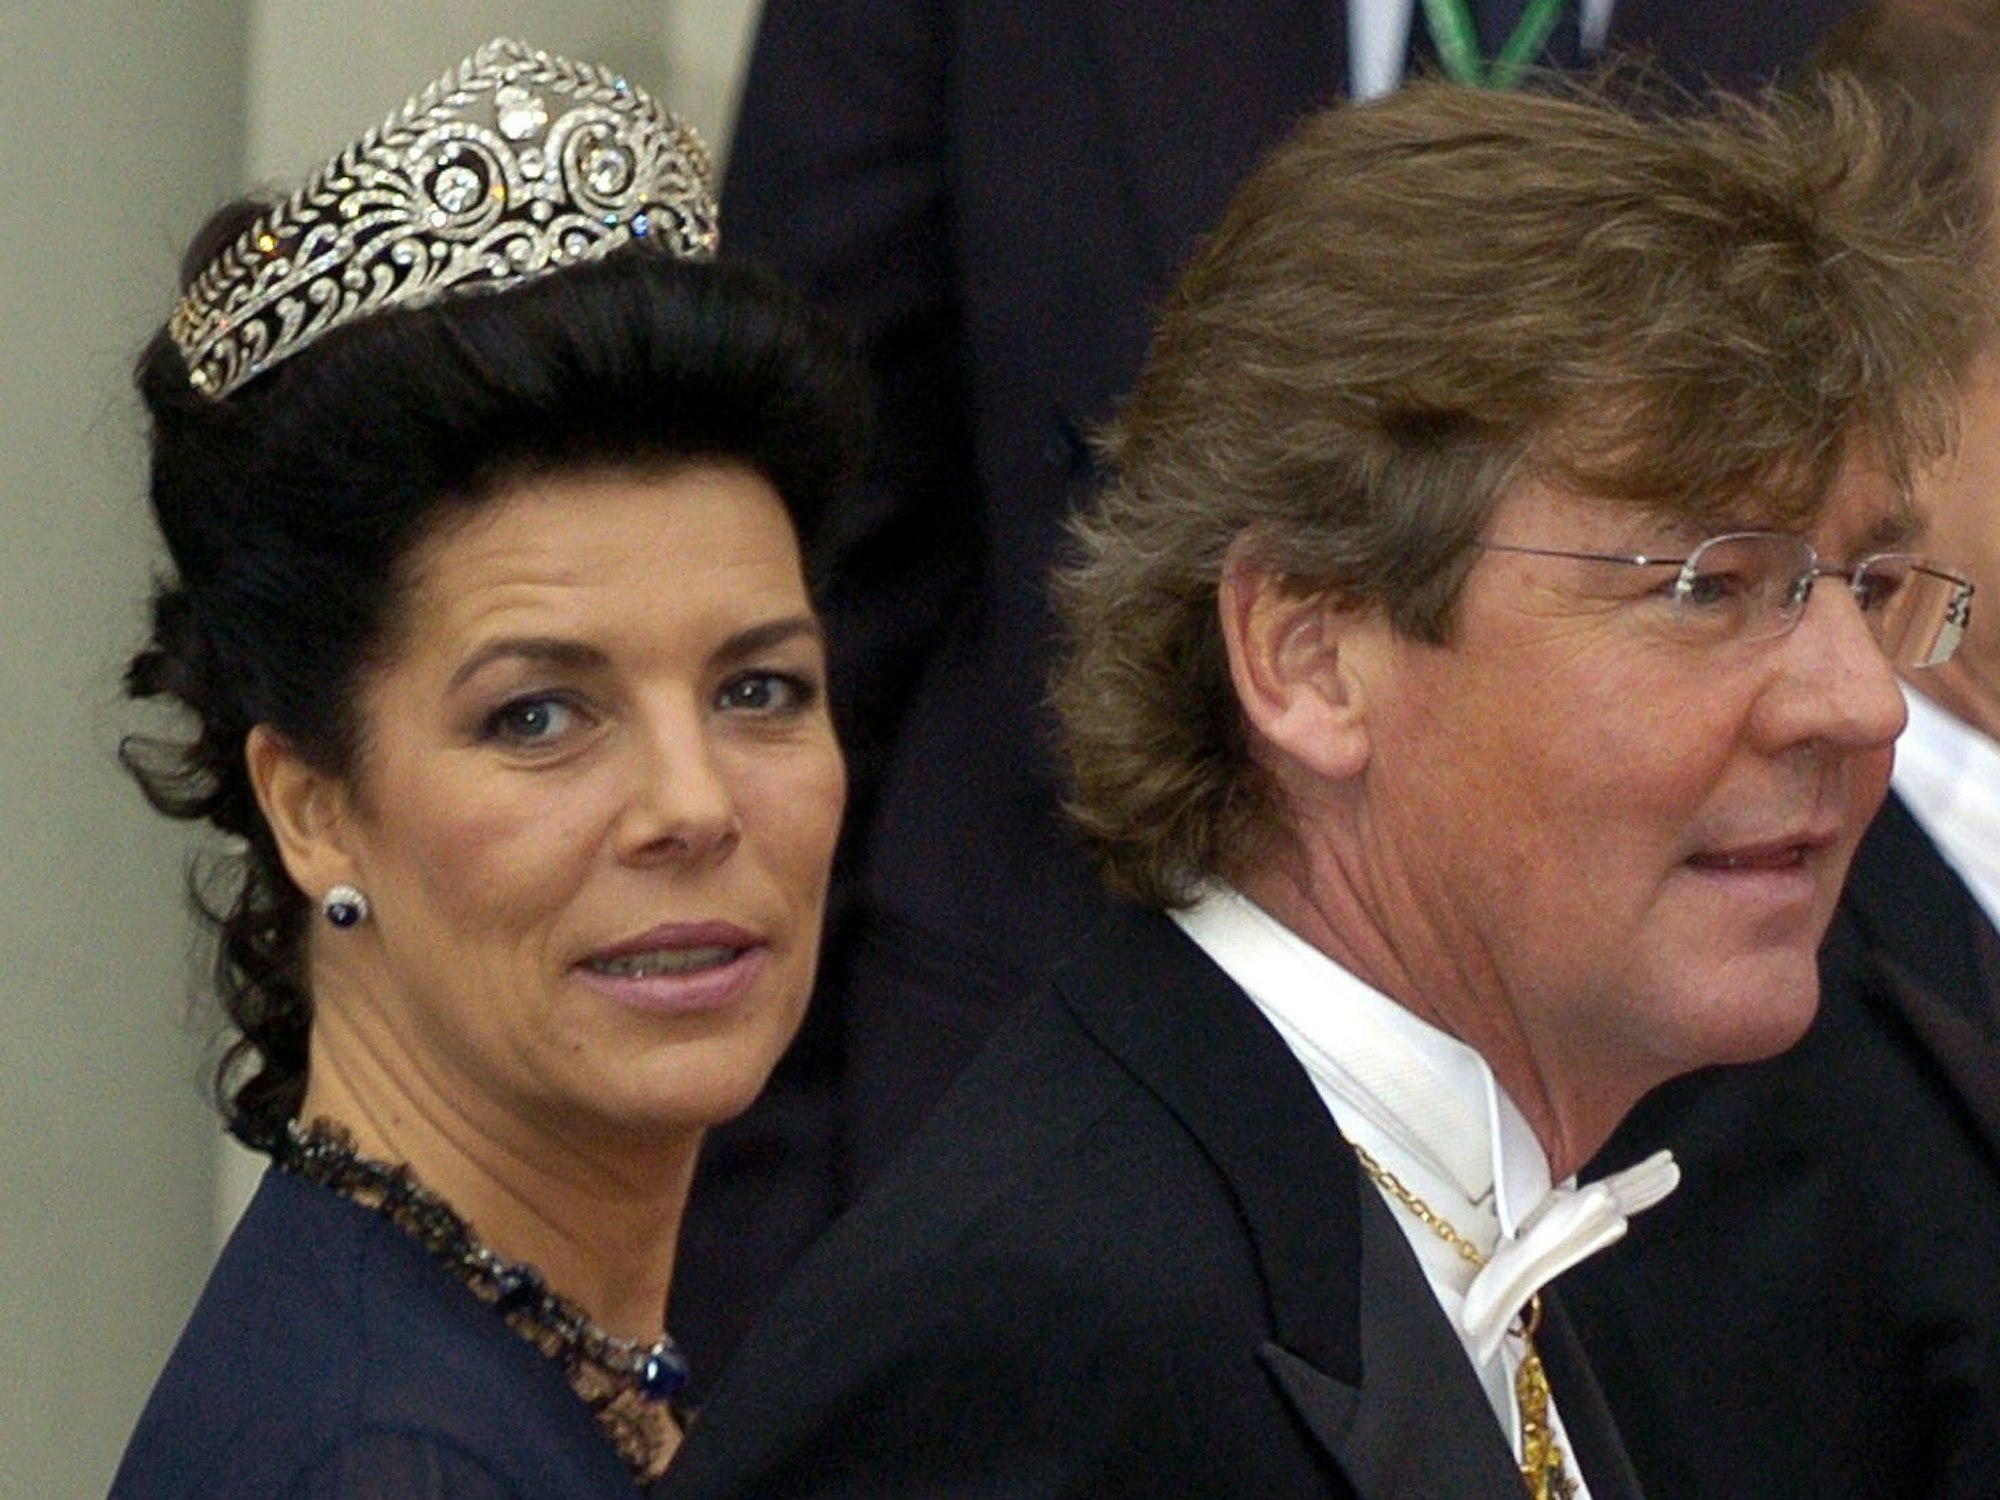 Prinzessin Caroline von Monaco und ihr Mann, Prinz Ernst August von Hannover, auf dem Weg zum Trauungsgottesdienst für den dänischen Kronprinzen Frederik und seine Braut Mary Donaldson in der Kathedrale in Kopenhagen.